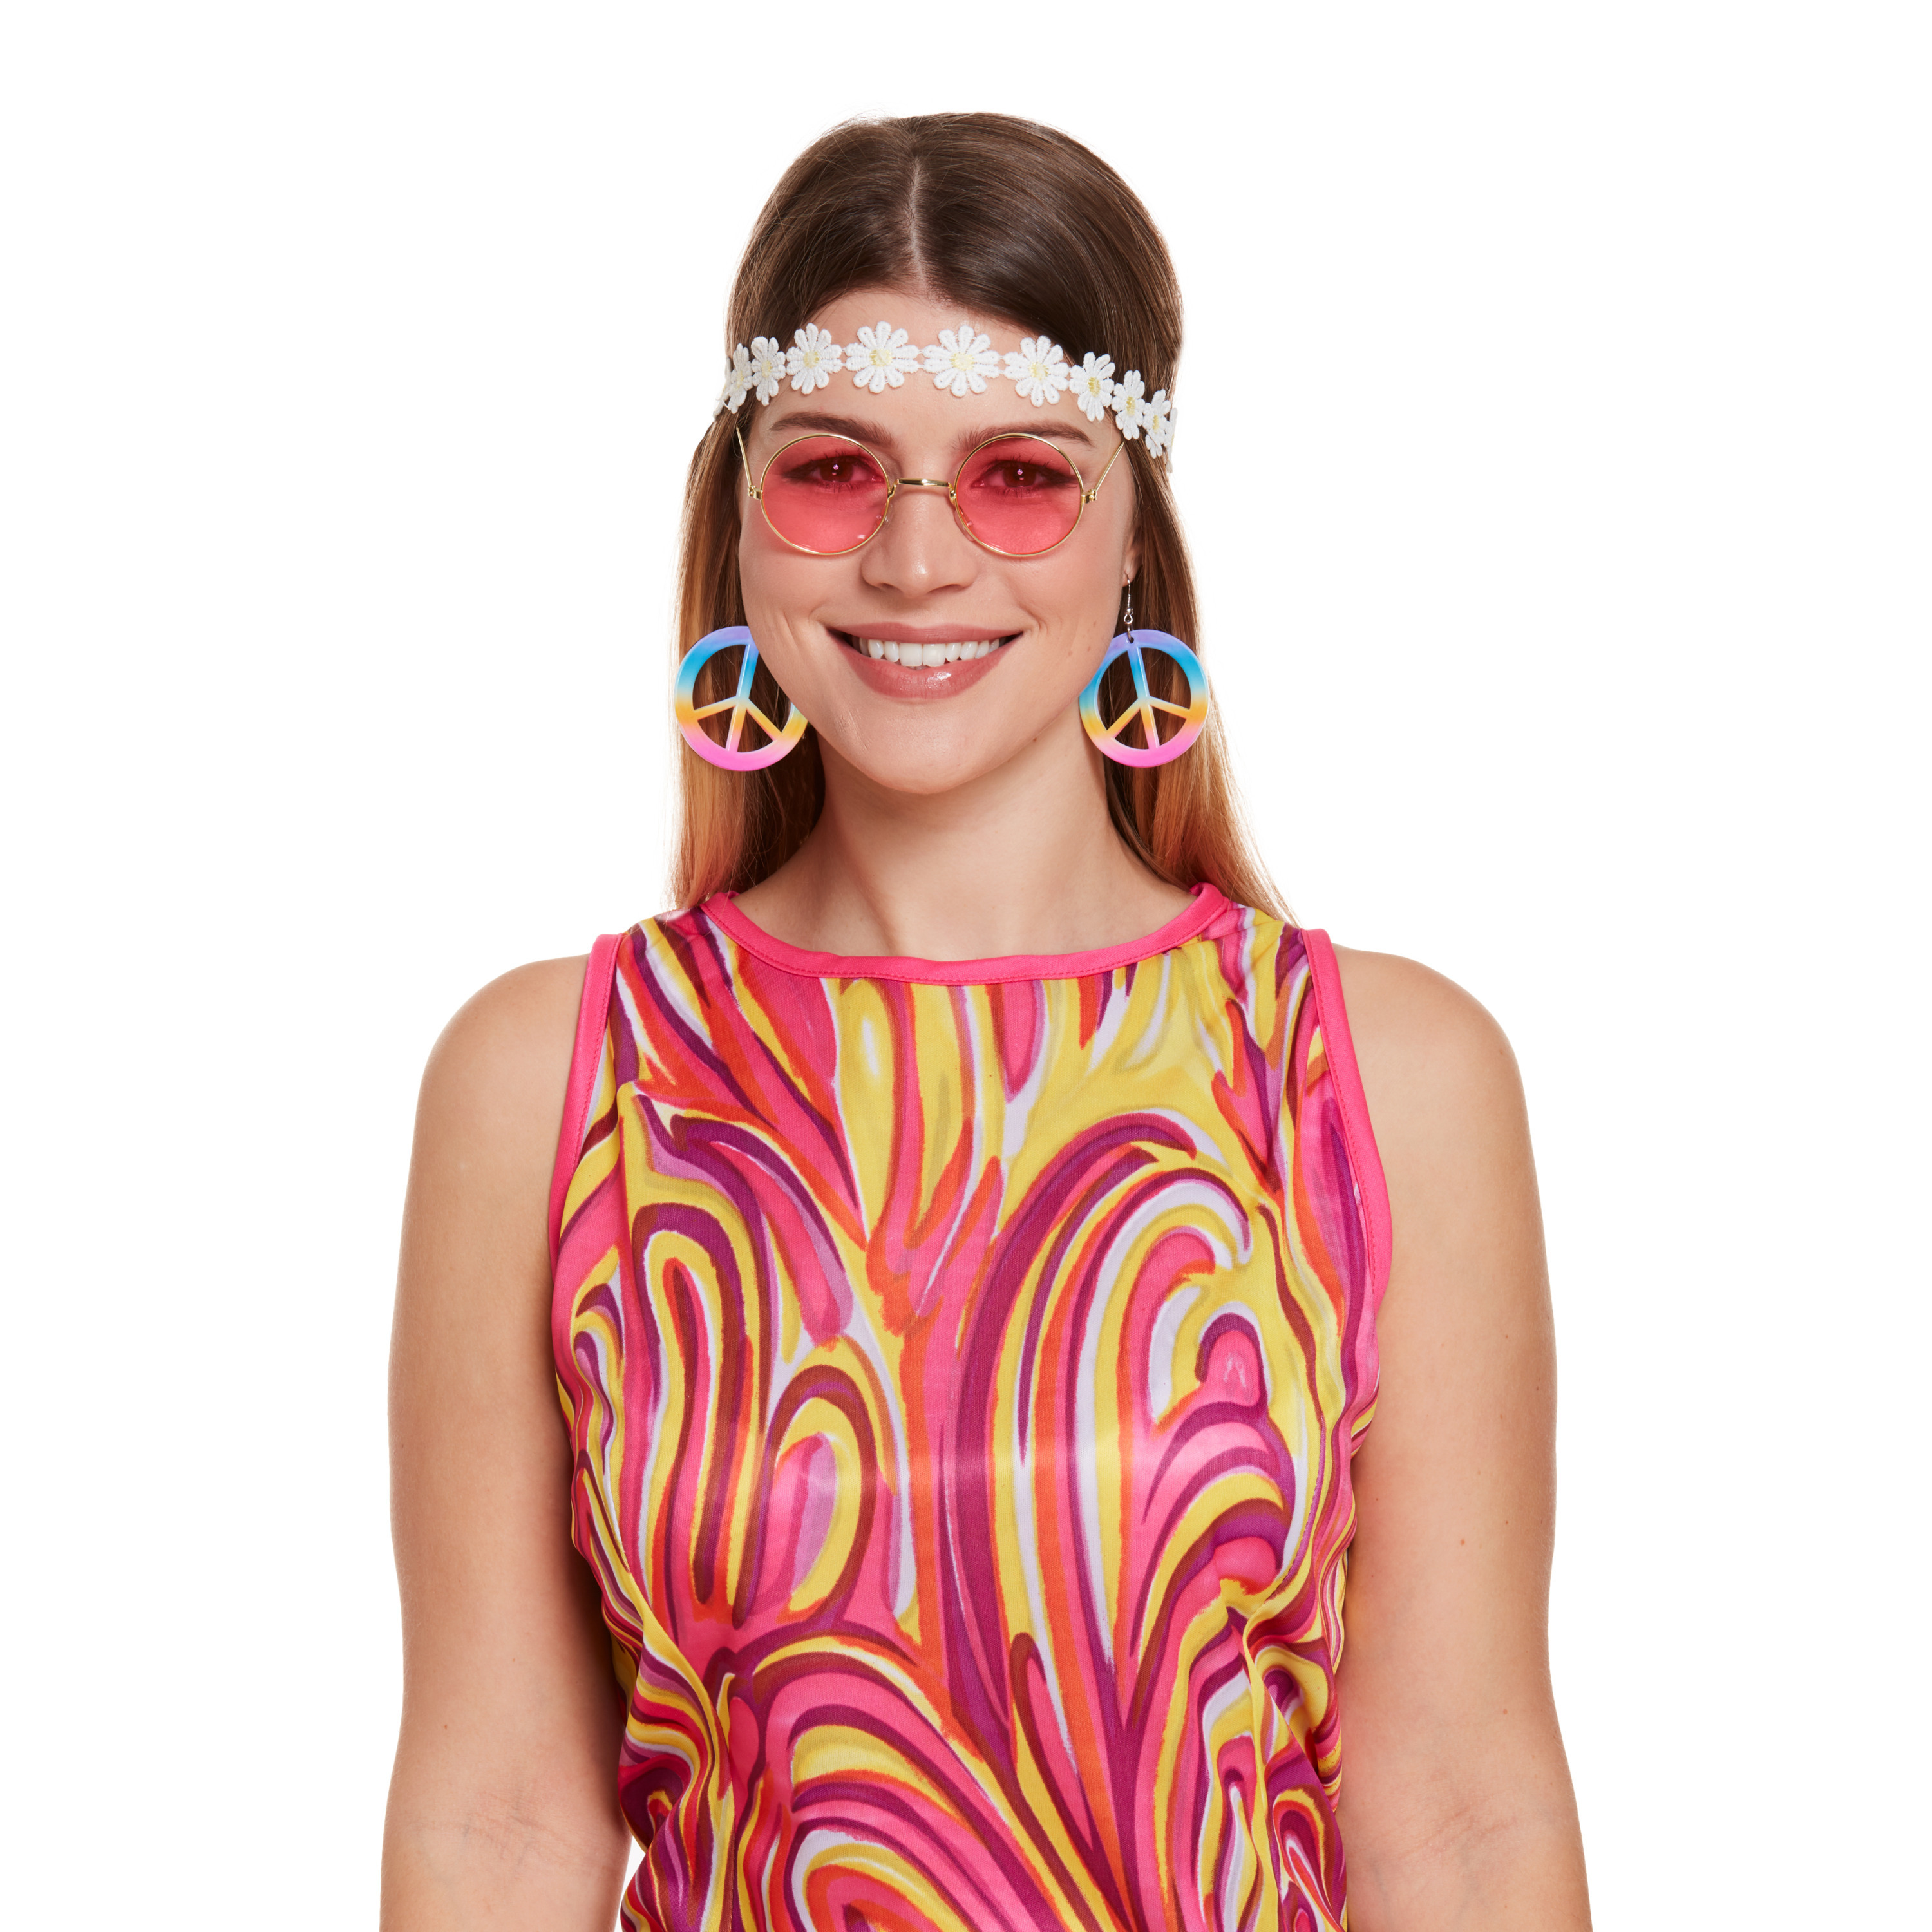 Hippie verkleed accessoire set met haarband roze bril en oorbellen